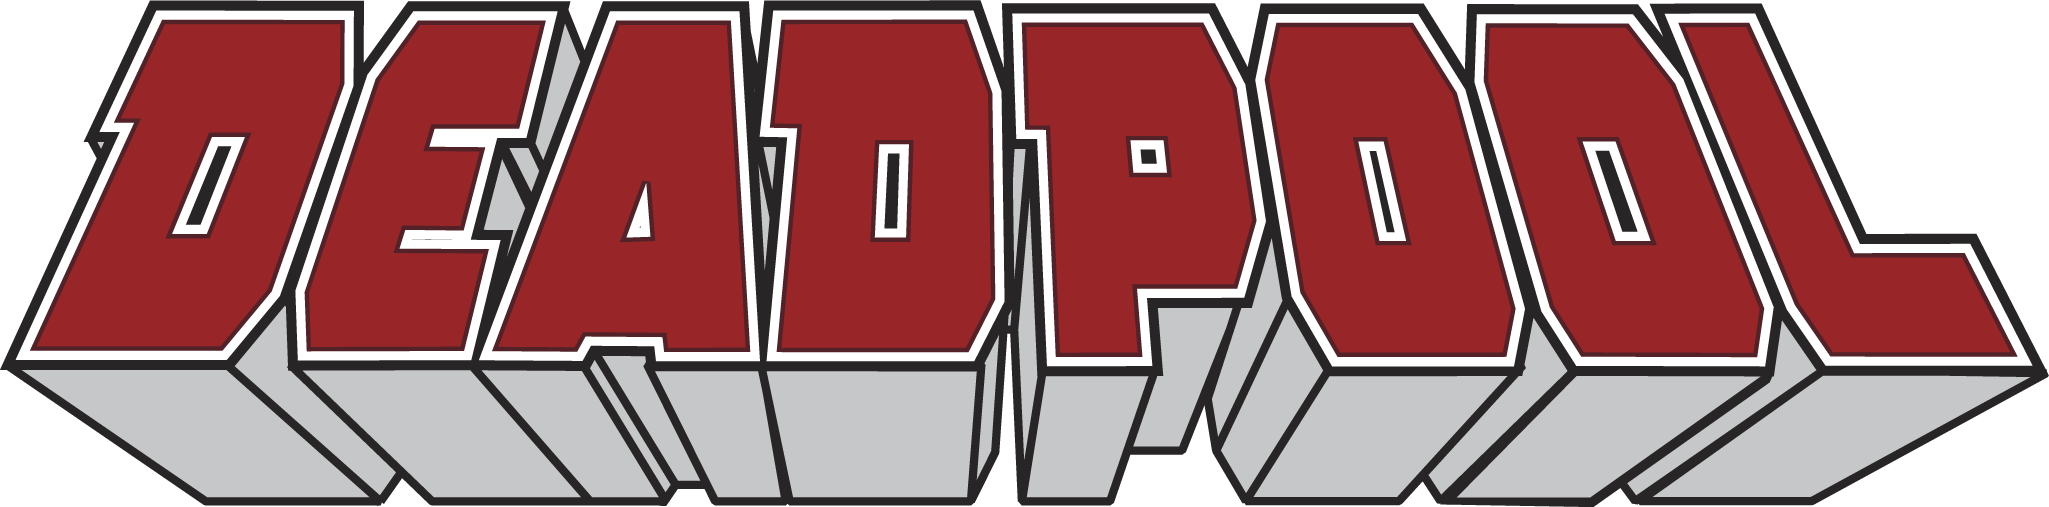 Официальный DEADPOOL логотип PNG изображения фон